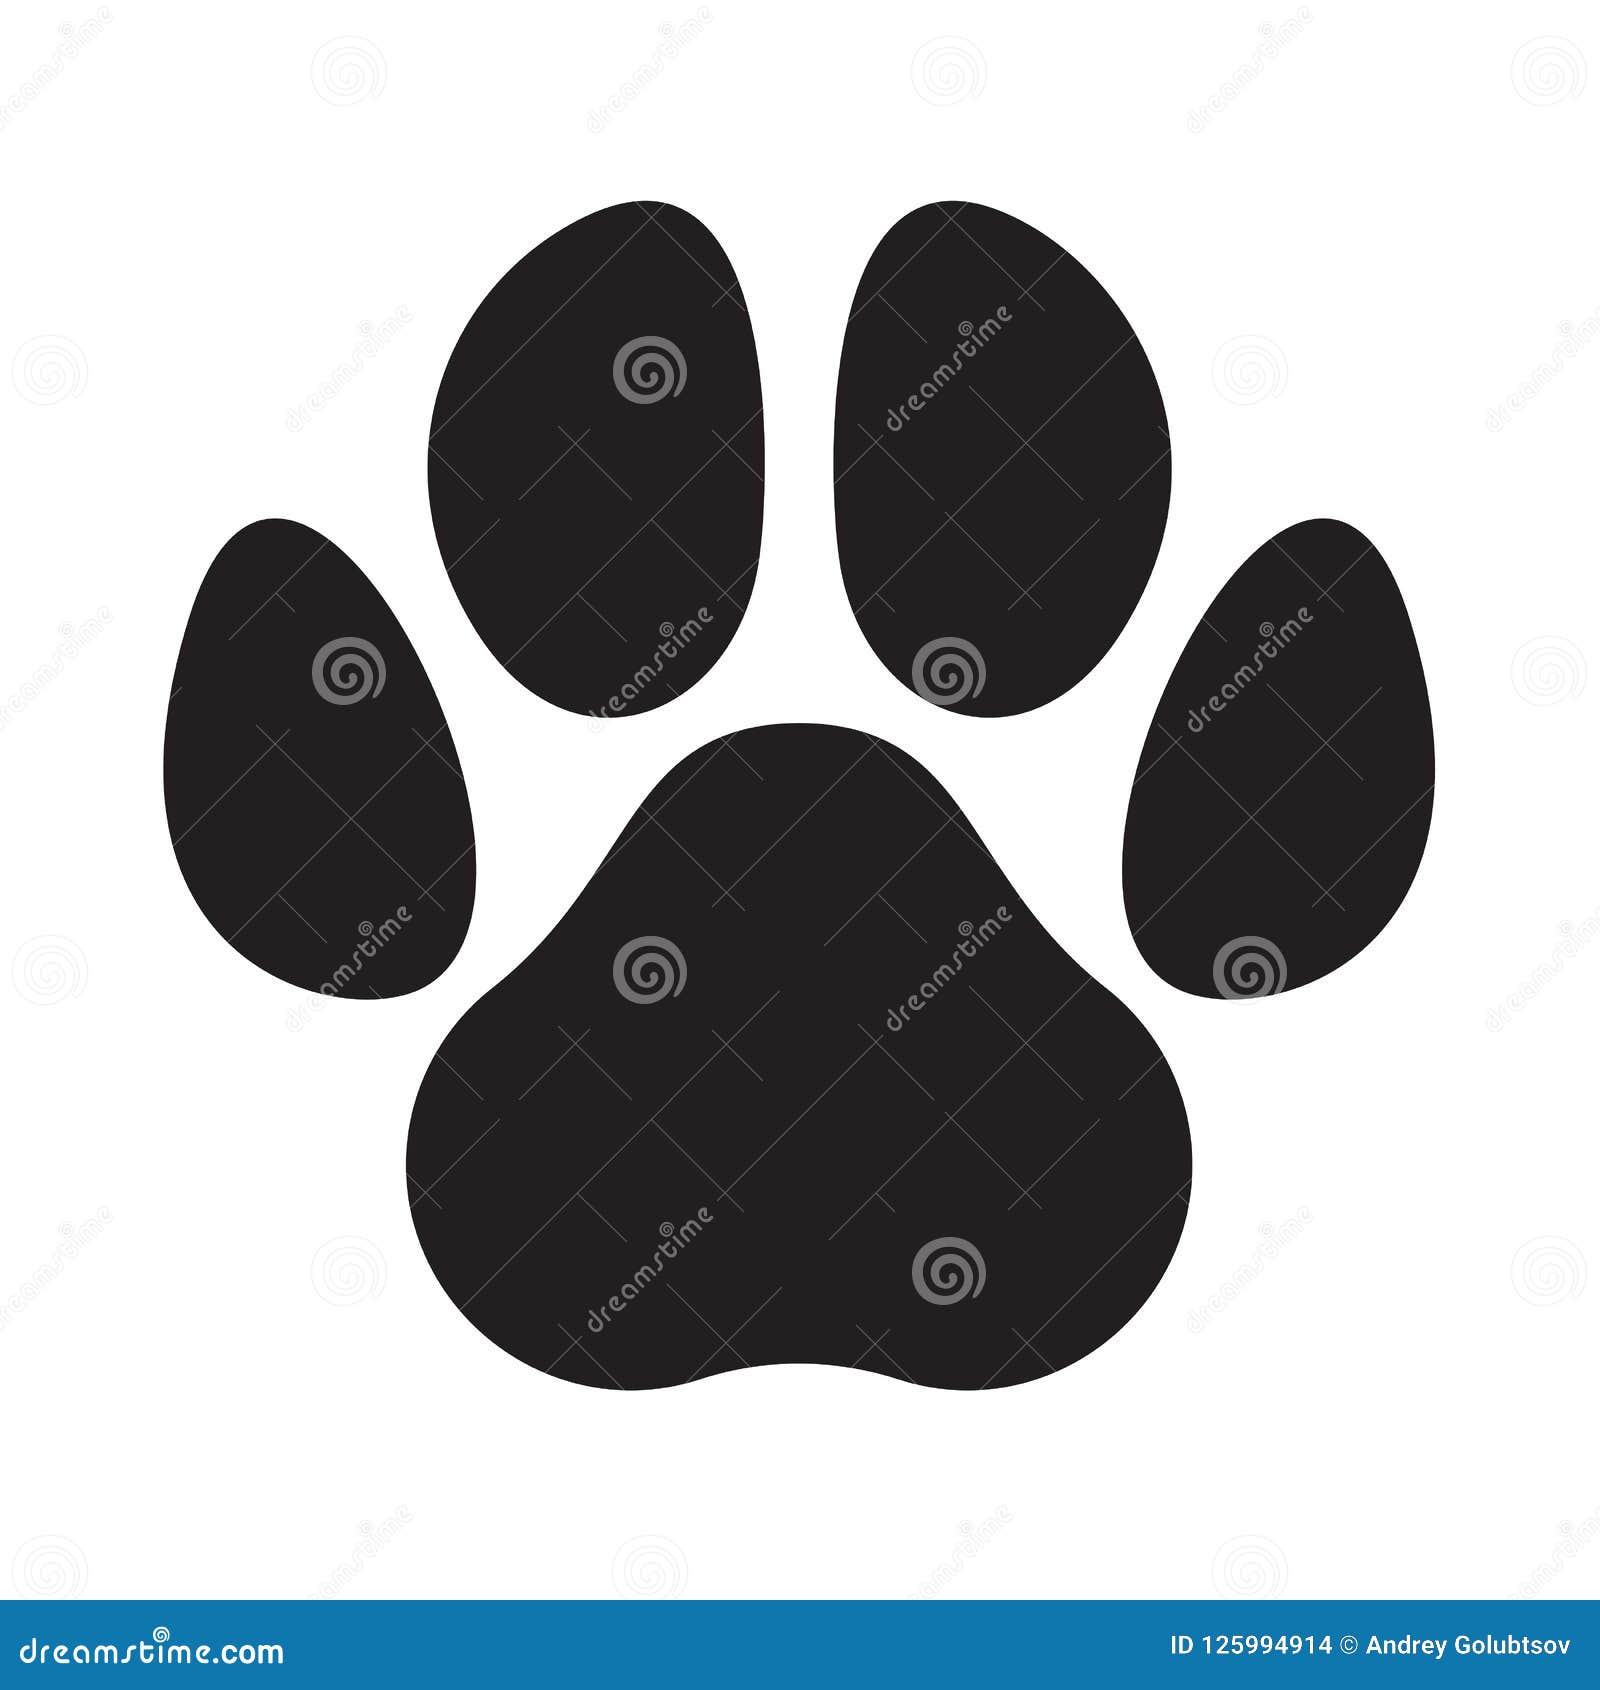 paw logo cat dog animal pet  footprint icon